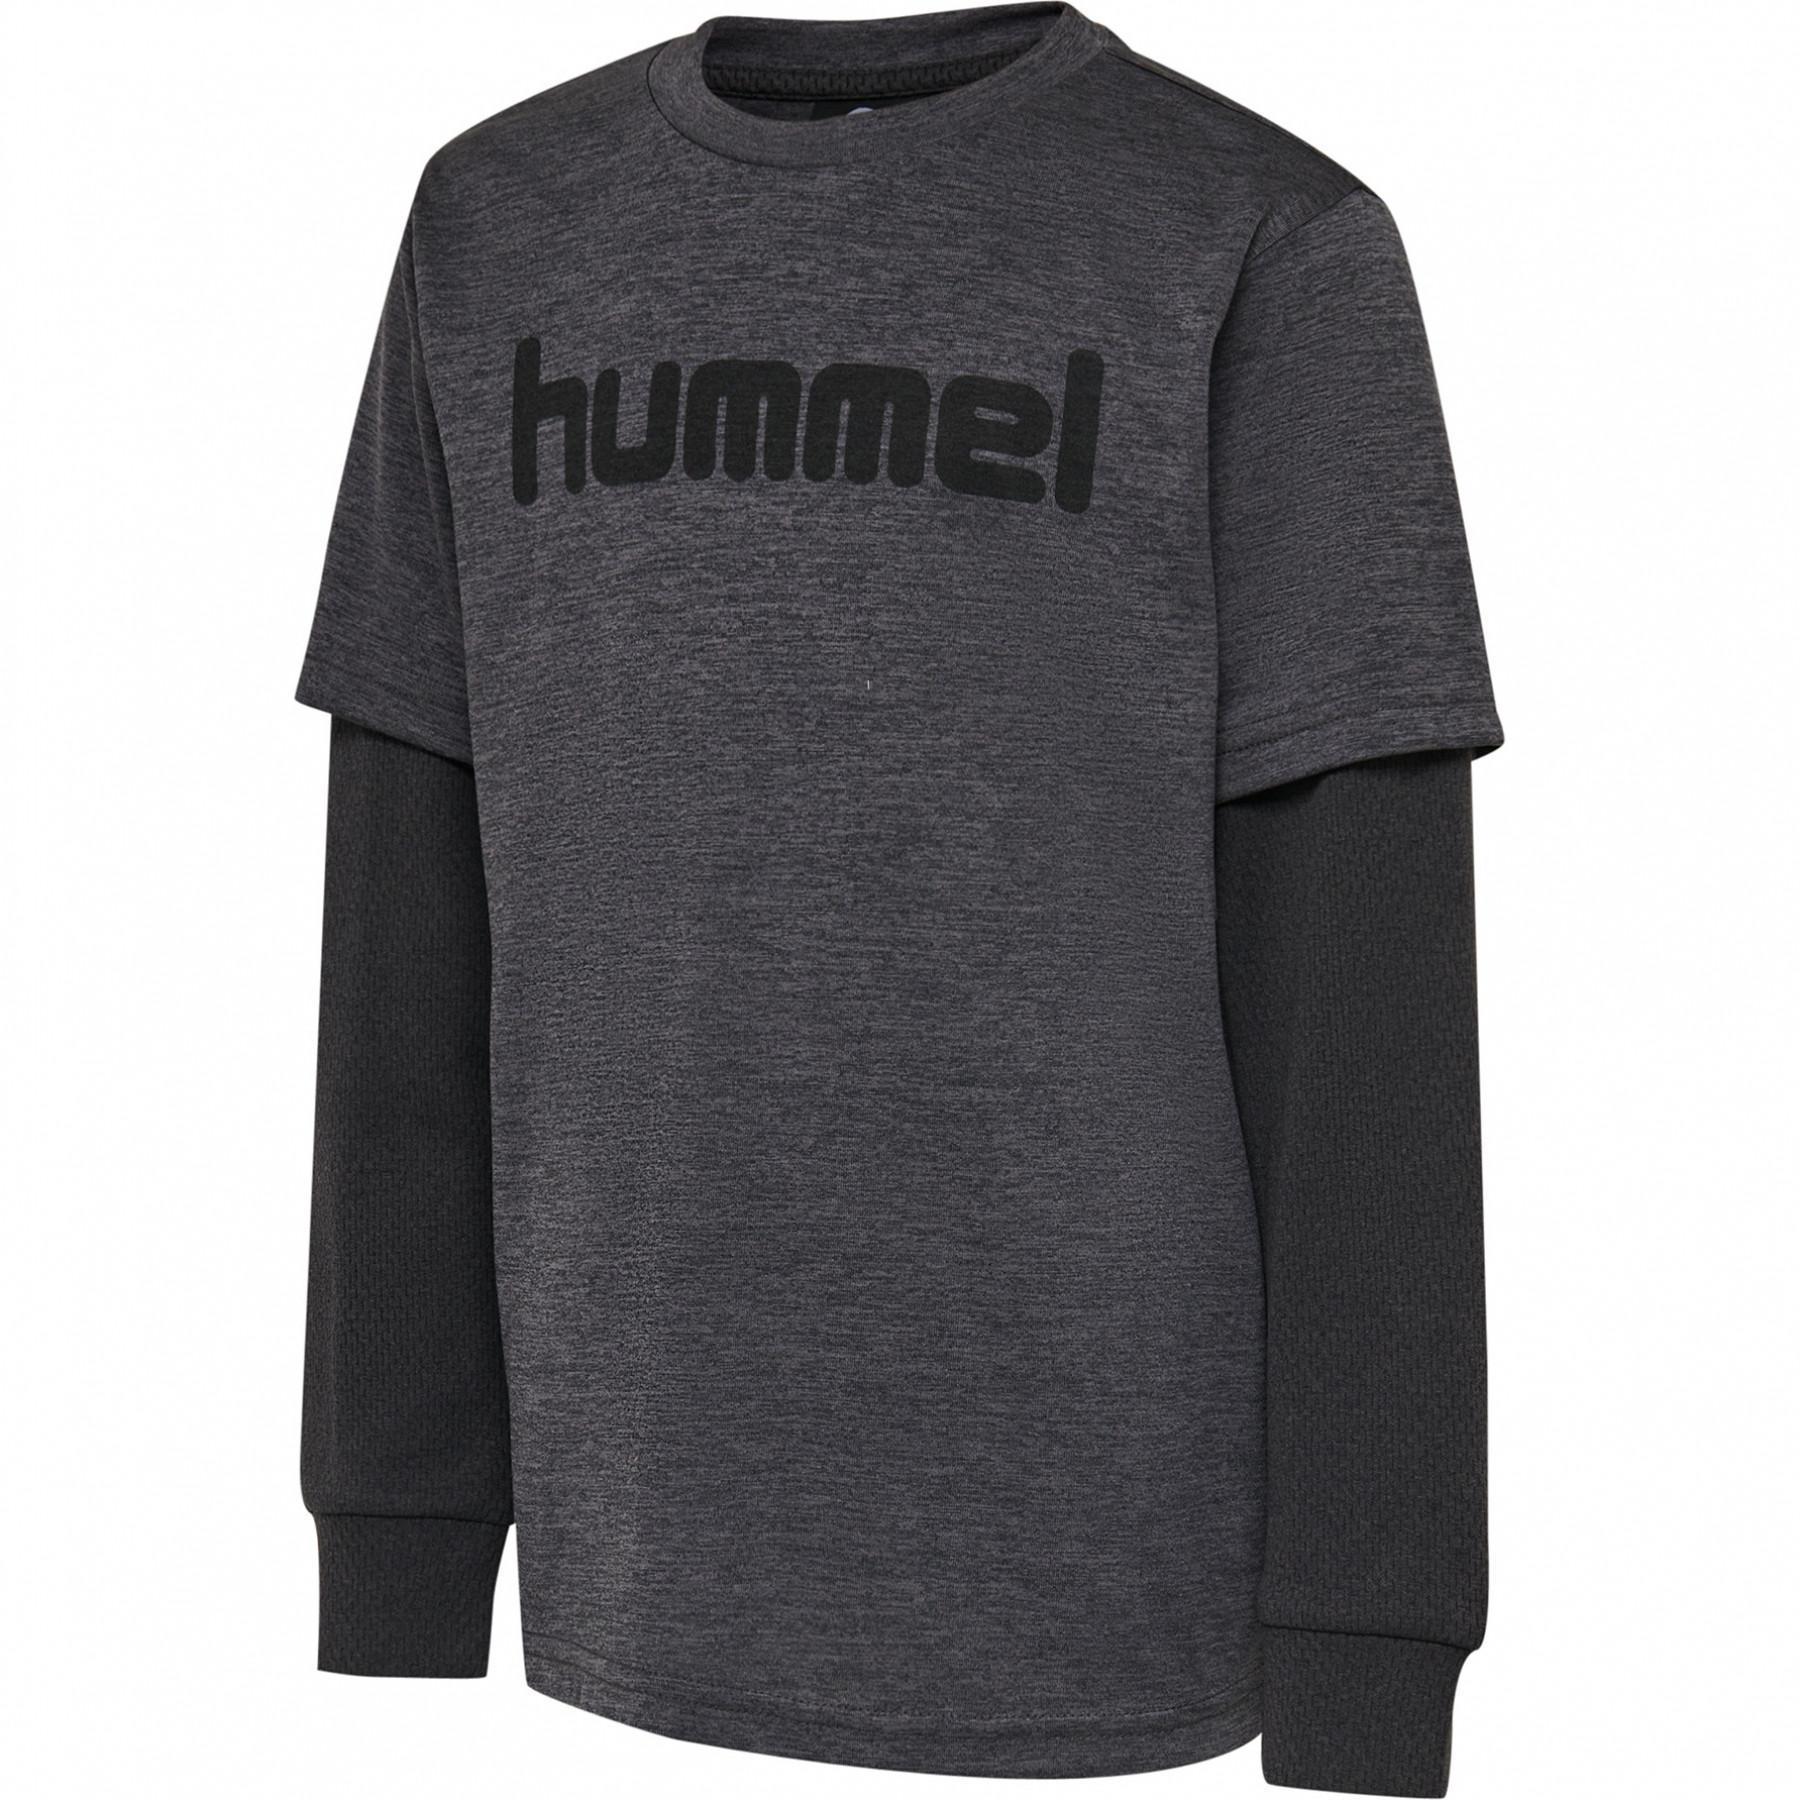 Långärmad T-shirt för barn Hummel hmldylan